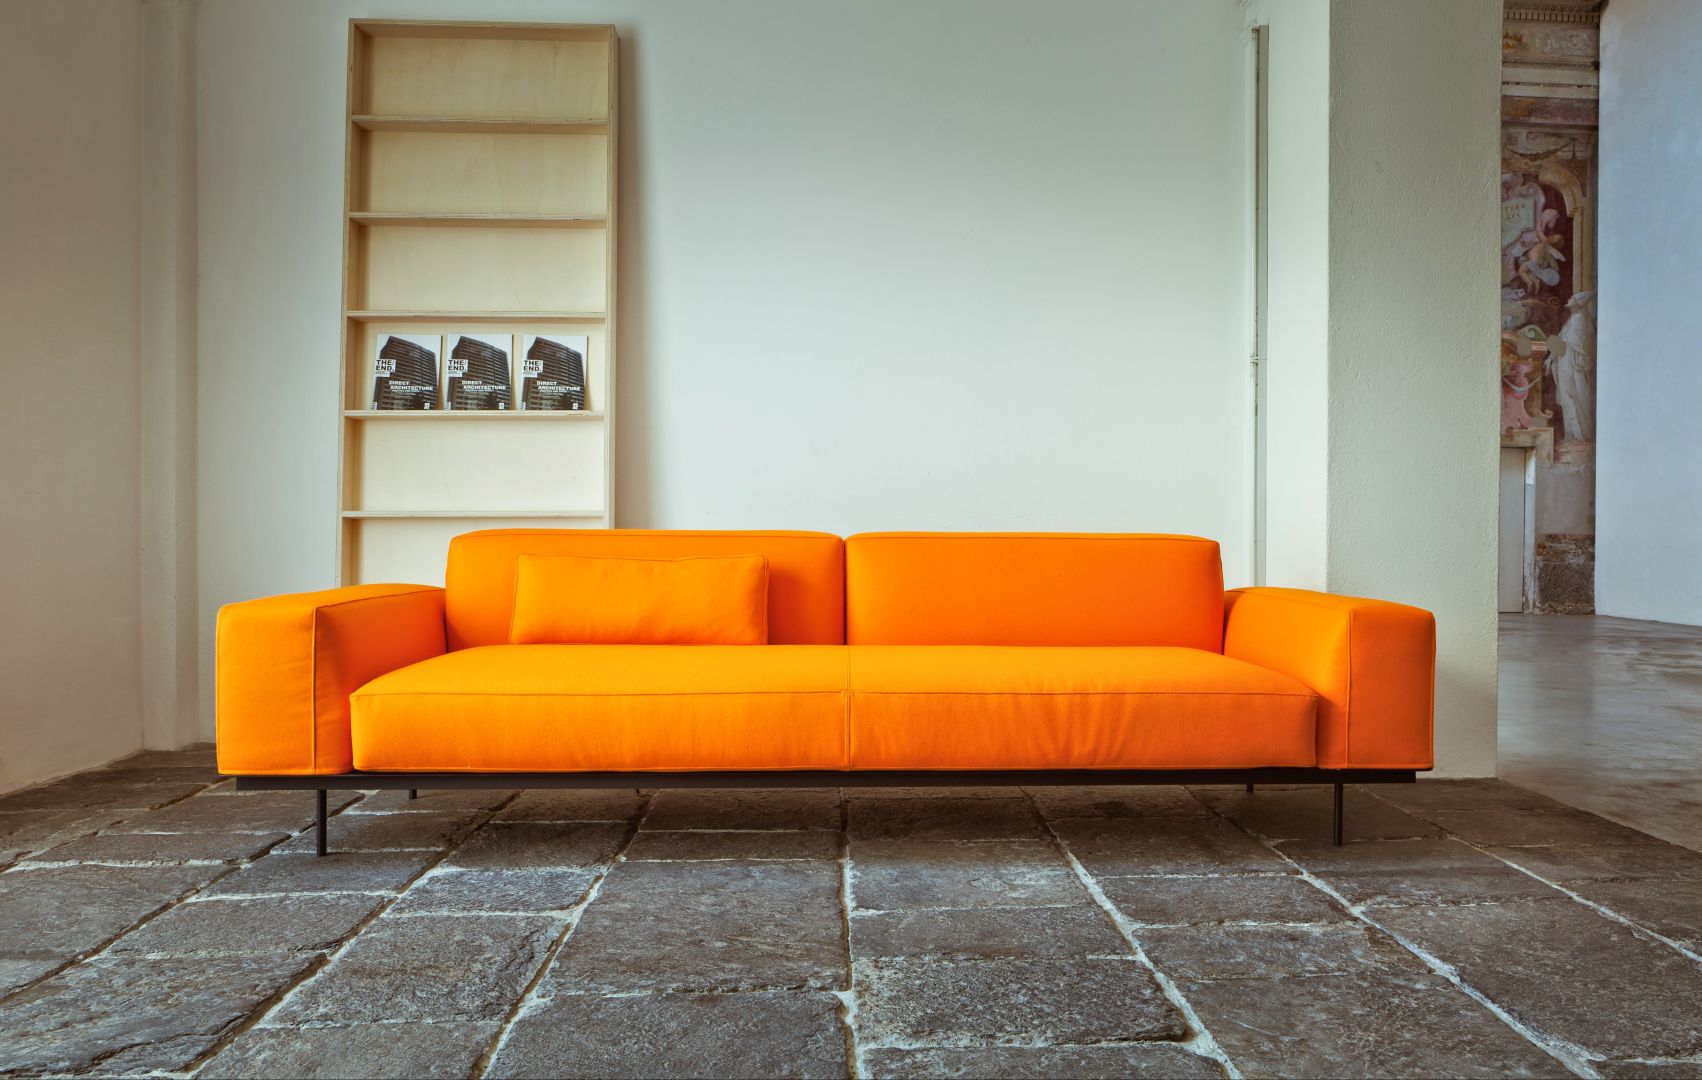 Zwyczajna pomarańczowa sofa? Nic bardziej mylnego! Wystarczy kliknąć na następne zdjęcie, aby zobaczyć jakie niesamowite funkcje posiada. Fot. Square Space